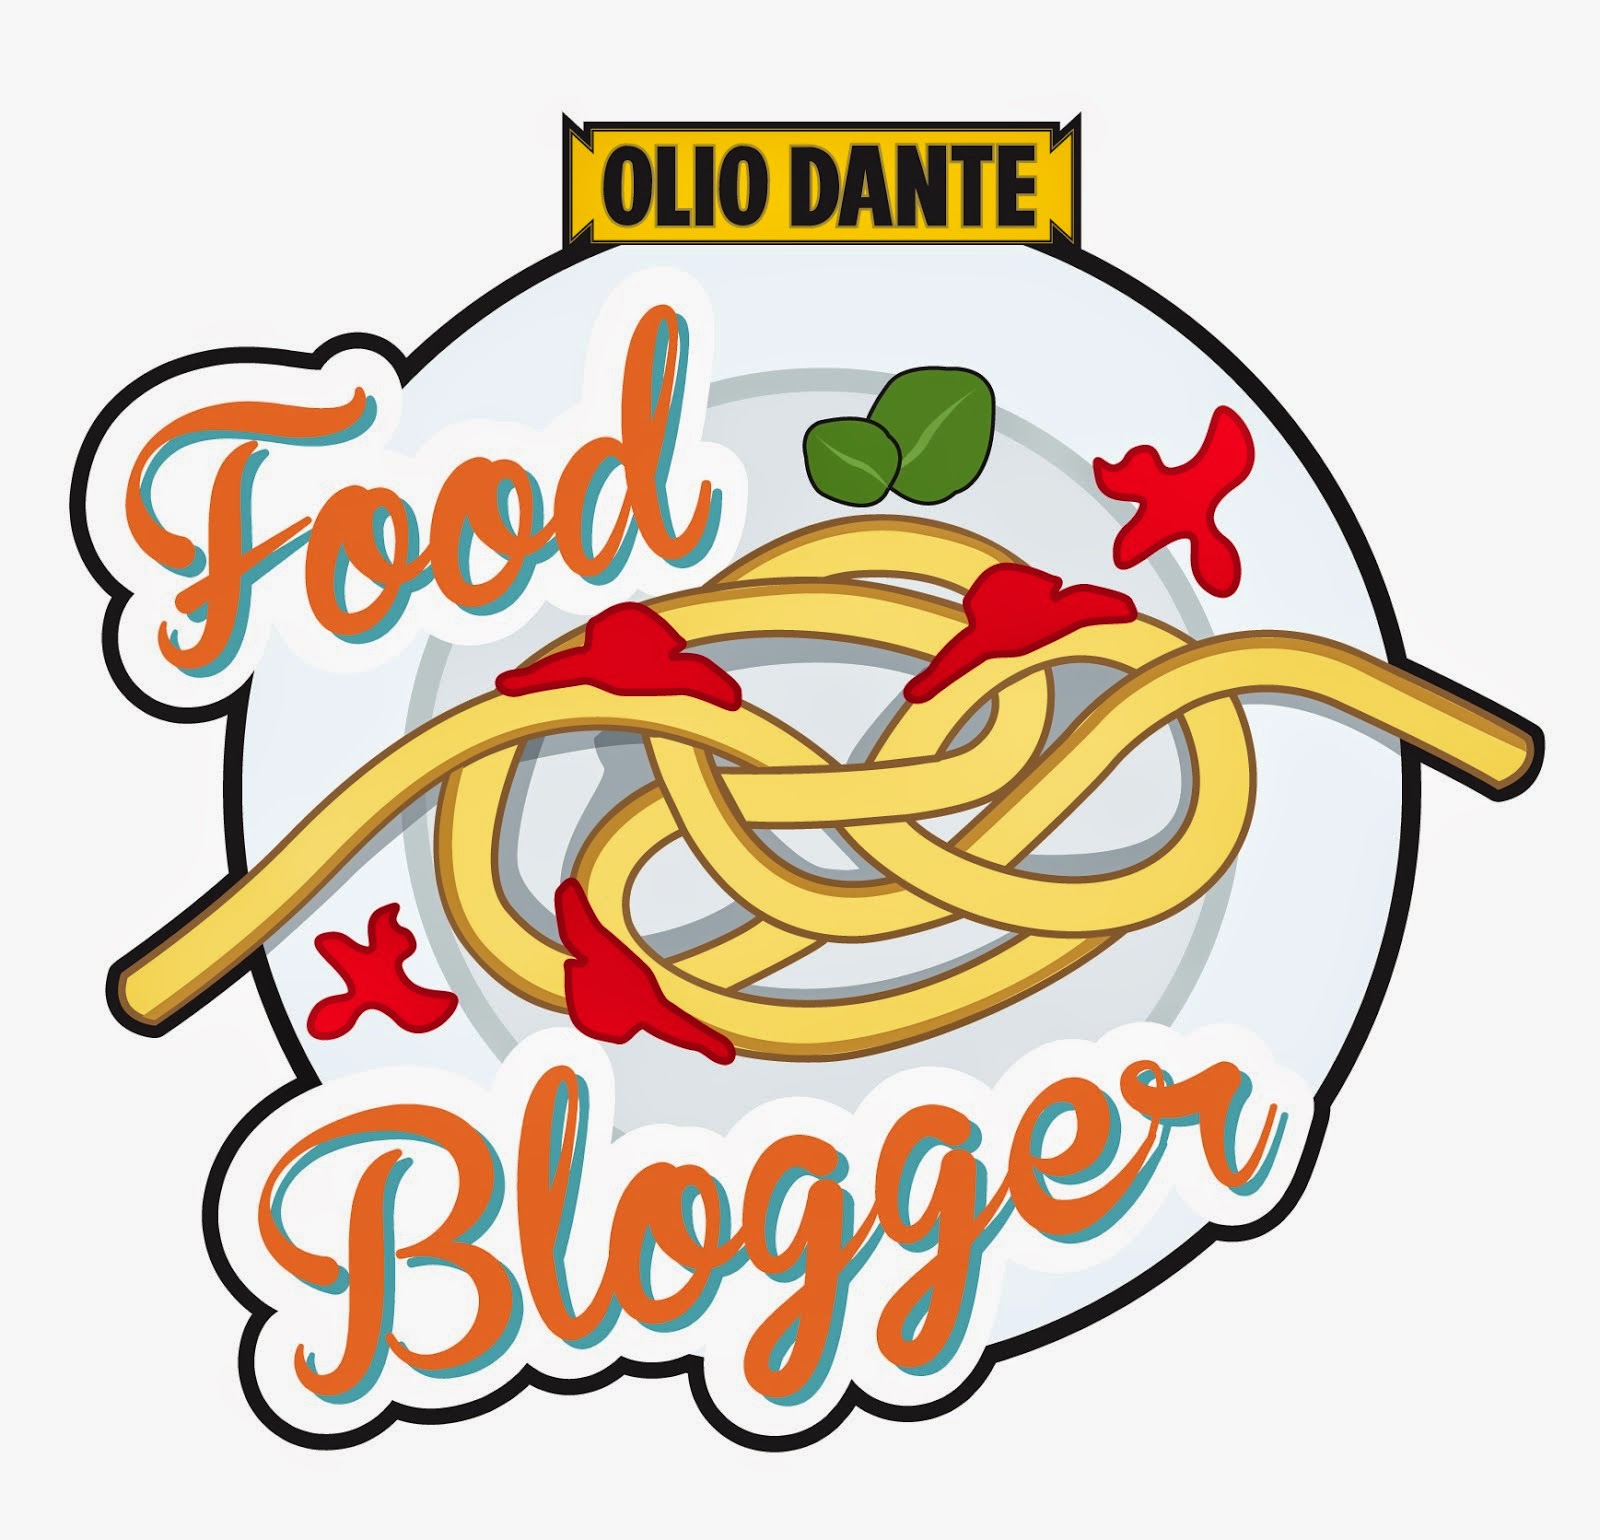 FOOD BLOGGER OLIO DANTE